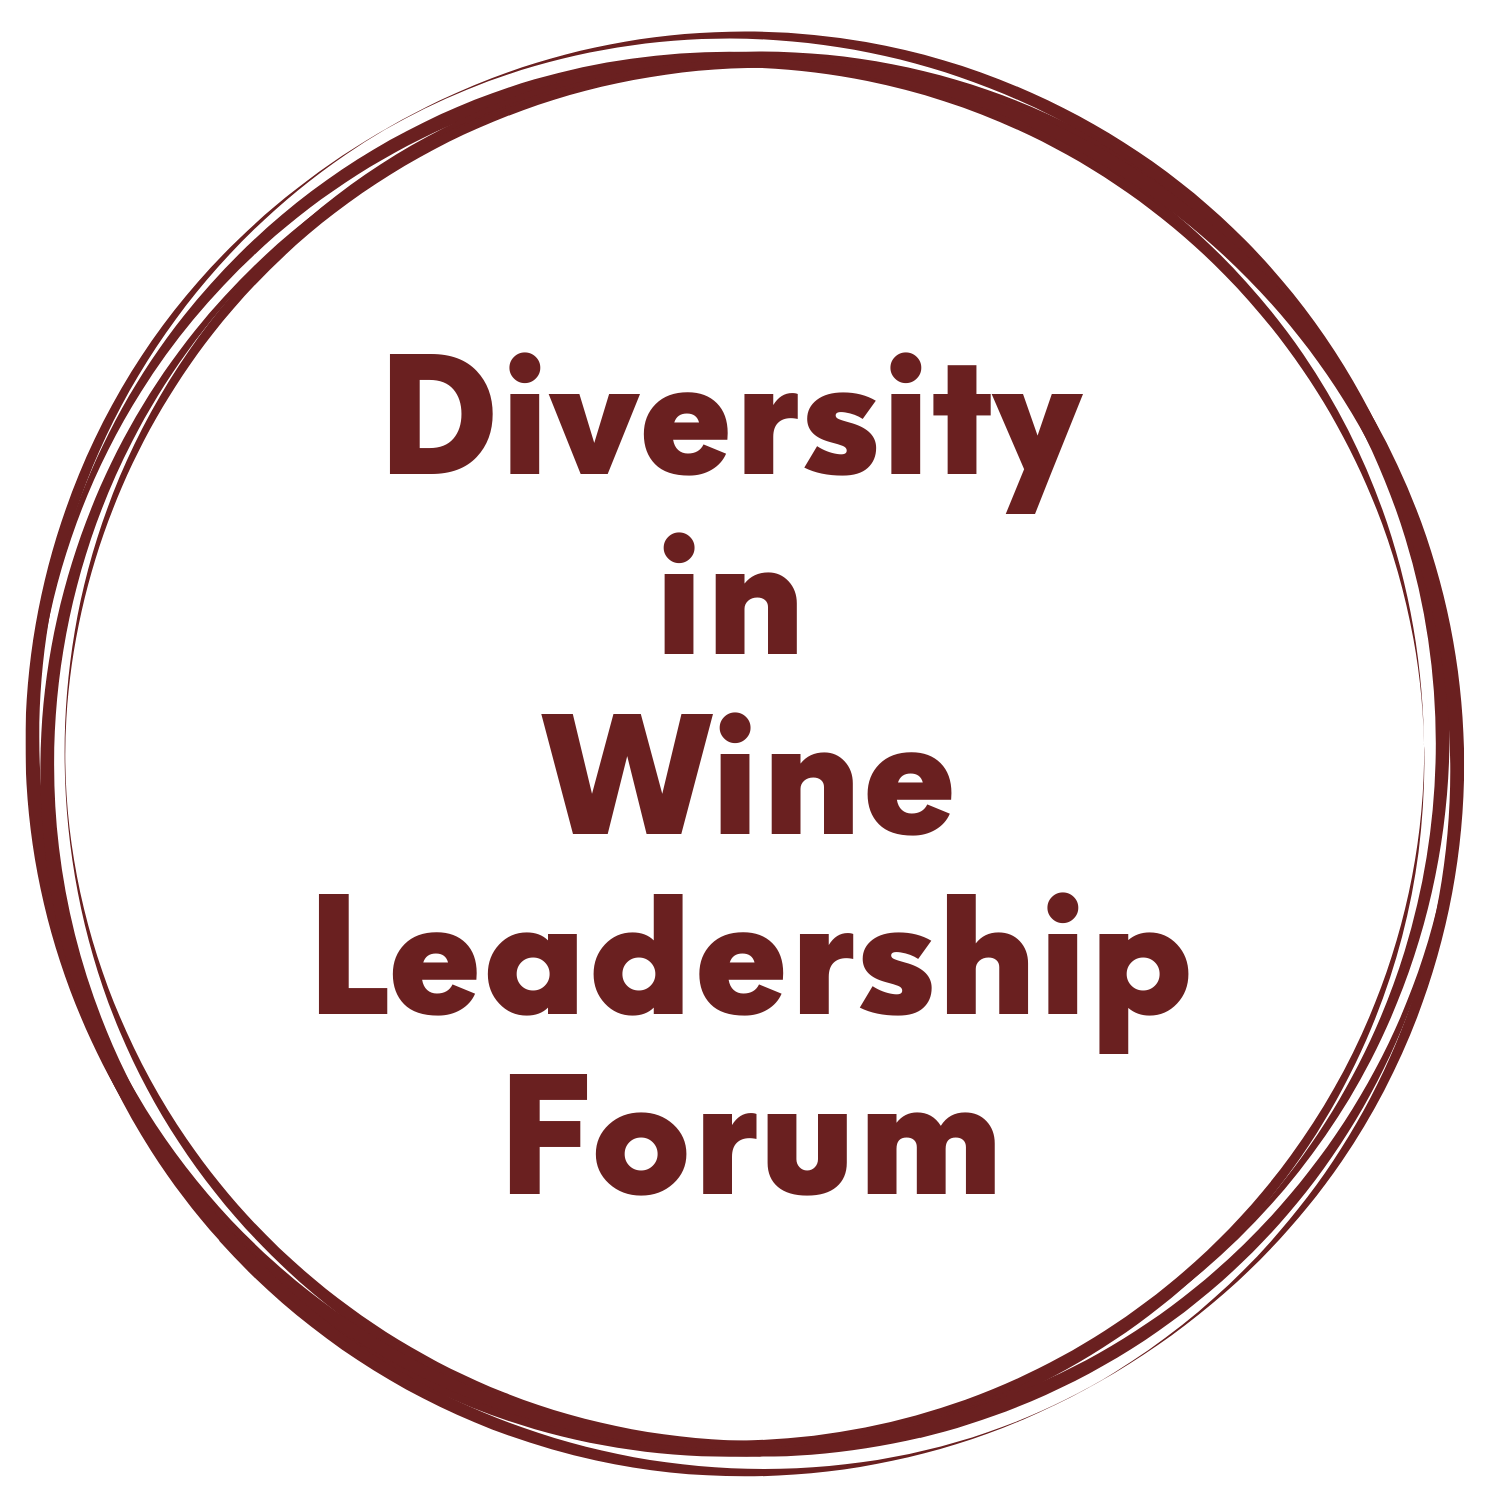 Diversity in Wine Leadership Forum